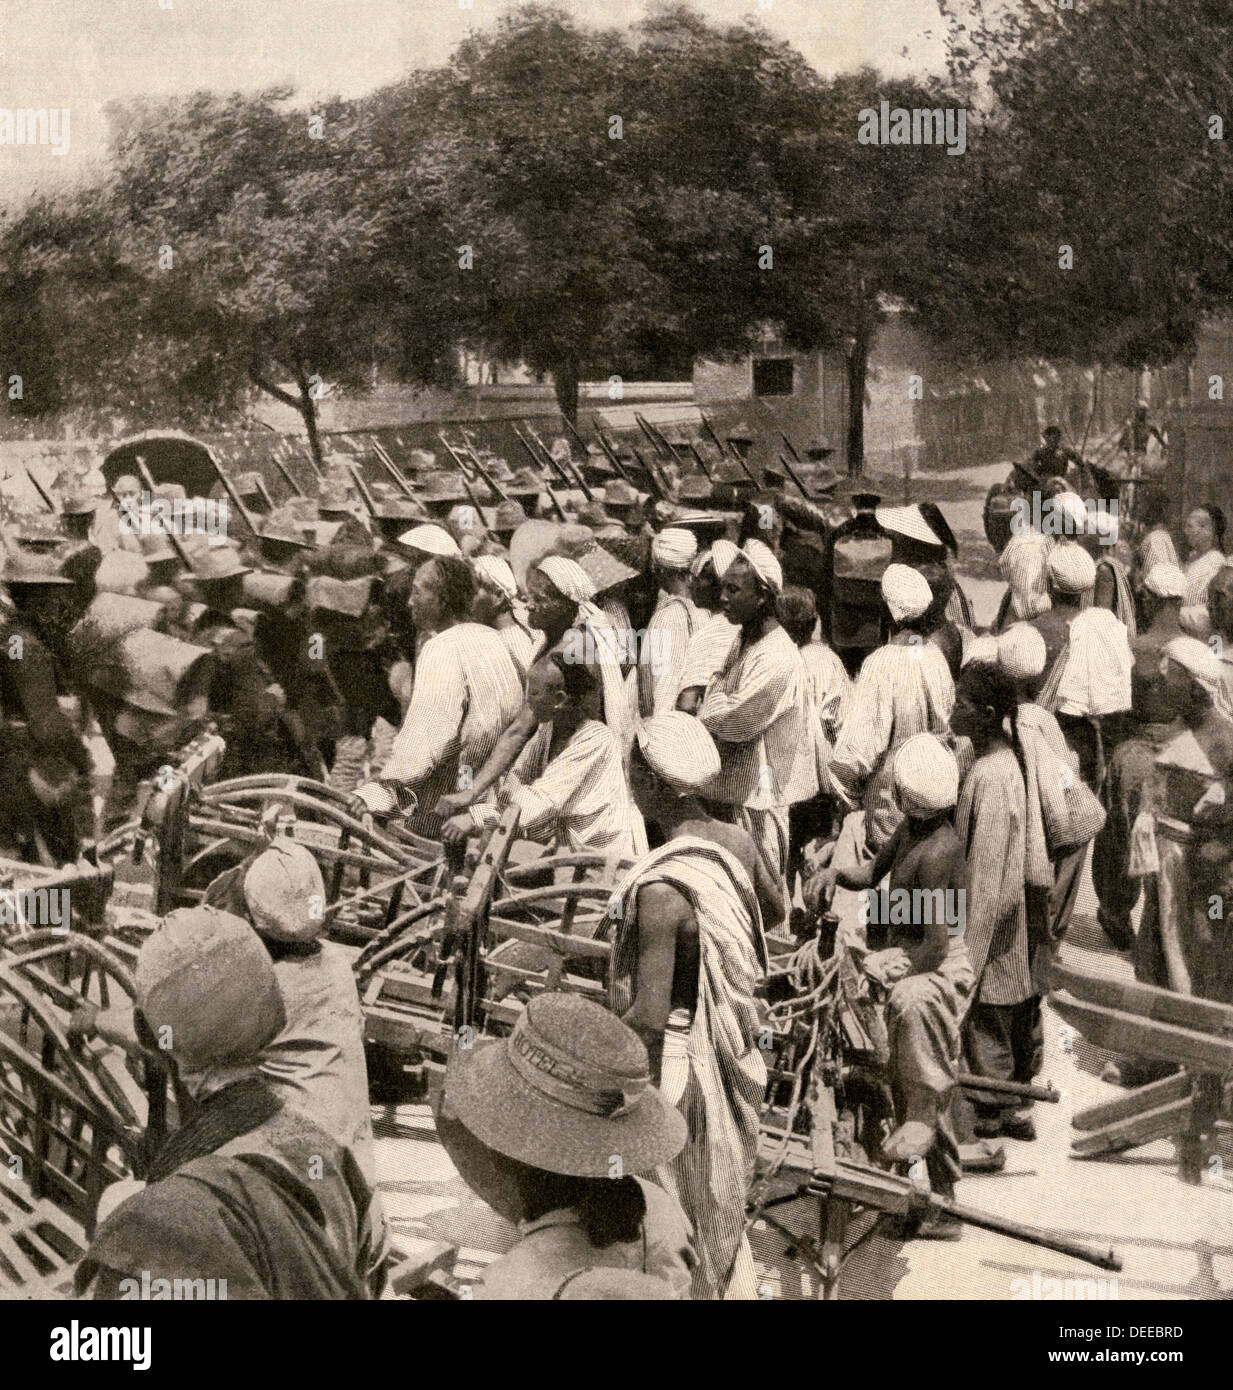 Les Marines américains de Tientsin, la Chine, l'entrée pendant la révolte des Boxers, en 1900. Reproduction d'une photographie de demi-teinte Banque D'Images